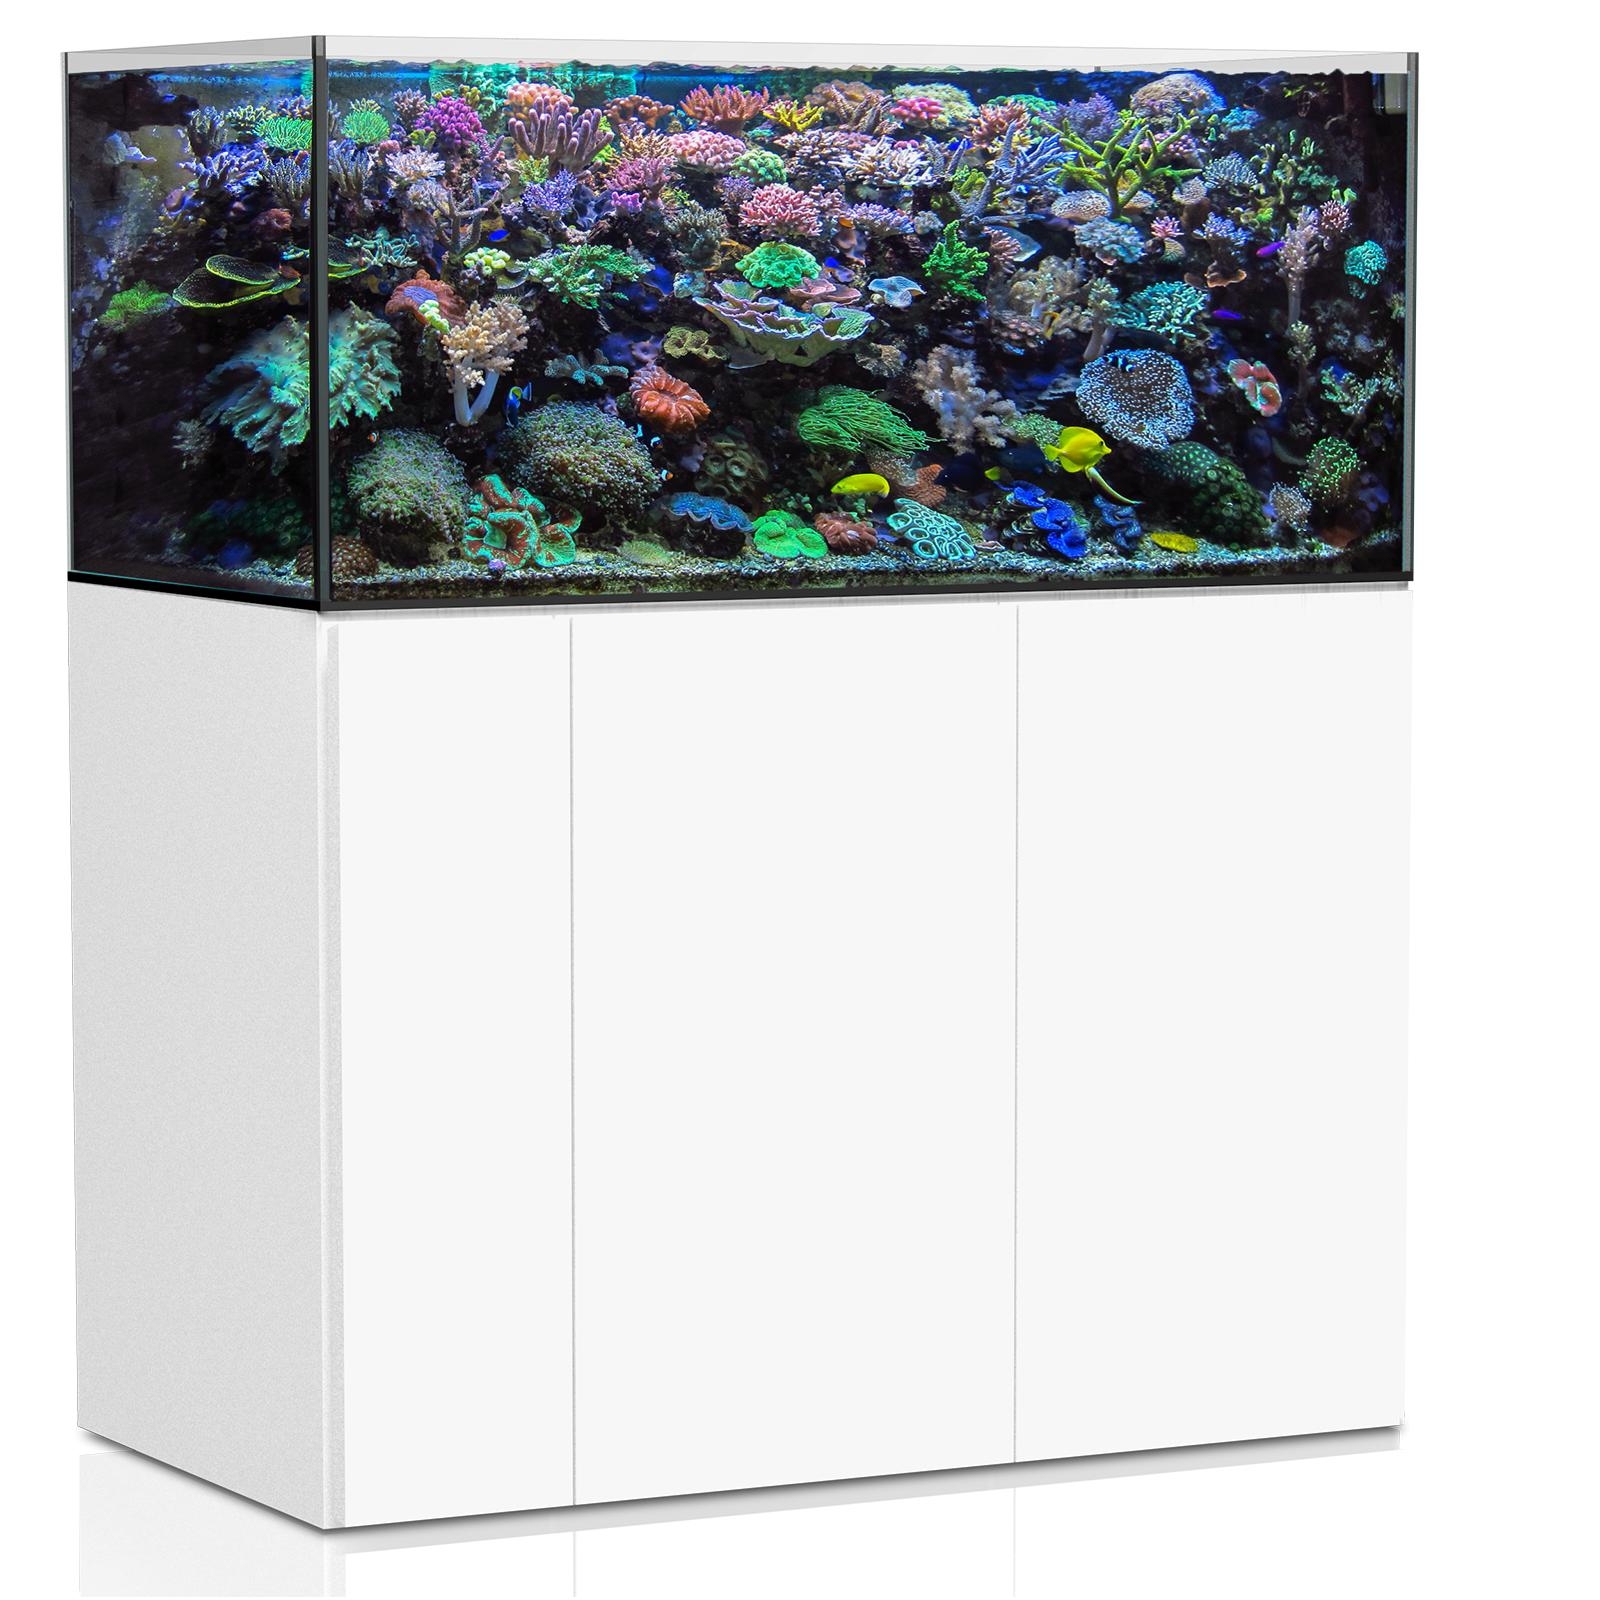  Aqua Medic Aquarium - Armatus 350 XD white